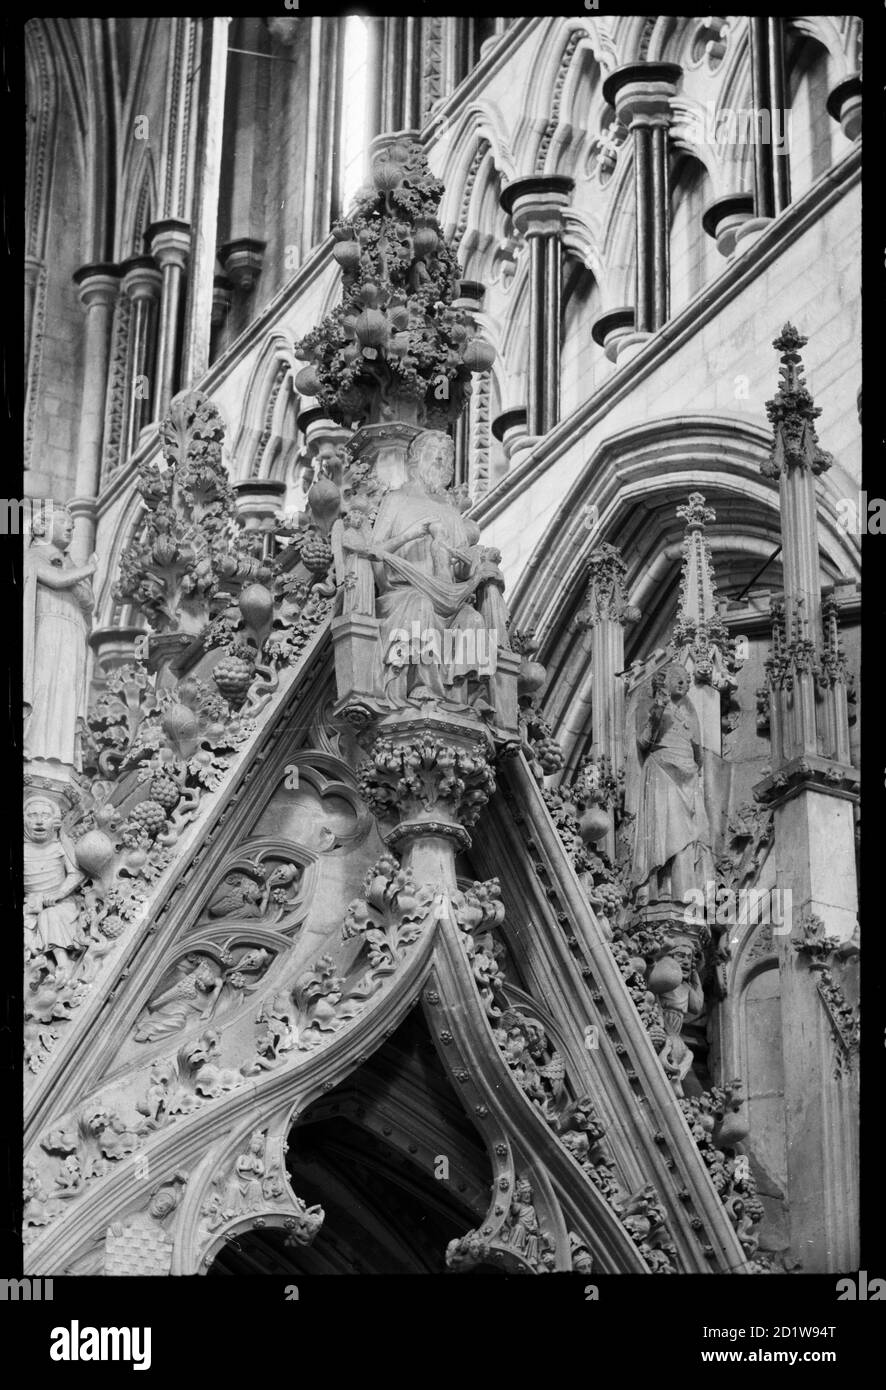 Detail der Oberseite des Ogee-Bogens auf der Chor-zugewandten Seite des Percy-Grabes, der Christus zeigt, der die Seele einer Person empfängt, mit kleinen Engelsfiguren auf beiden Seiten von ihm, und größere Figuren standen auf den Seiten des Bogens, die Instrumente halten. Stockfoto